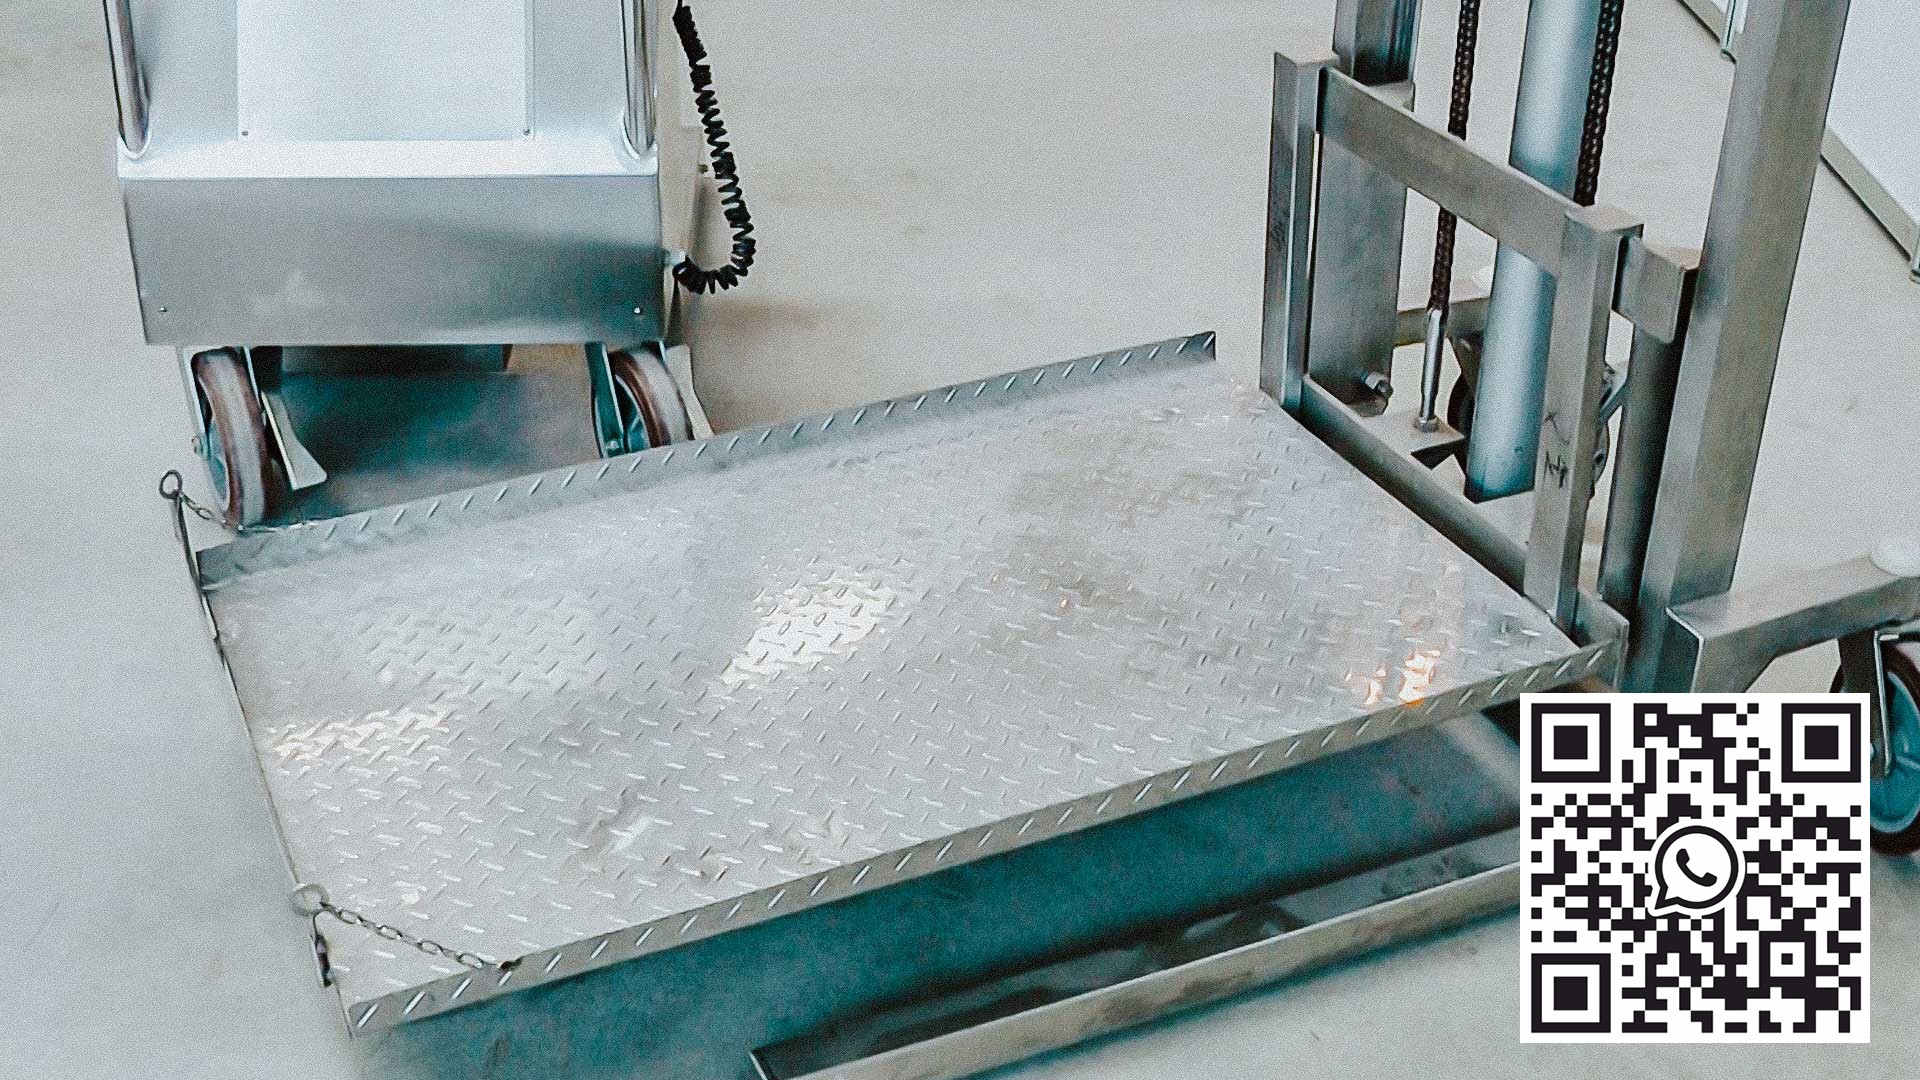 Ramassage automatique pour les conteneurs de poudre dans une usine pharmaceutique